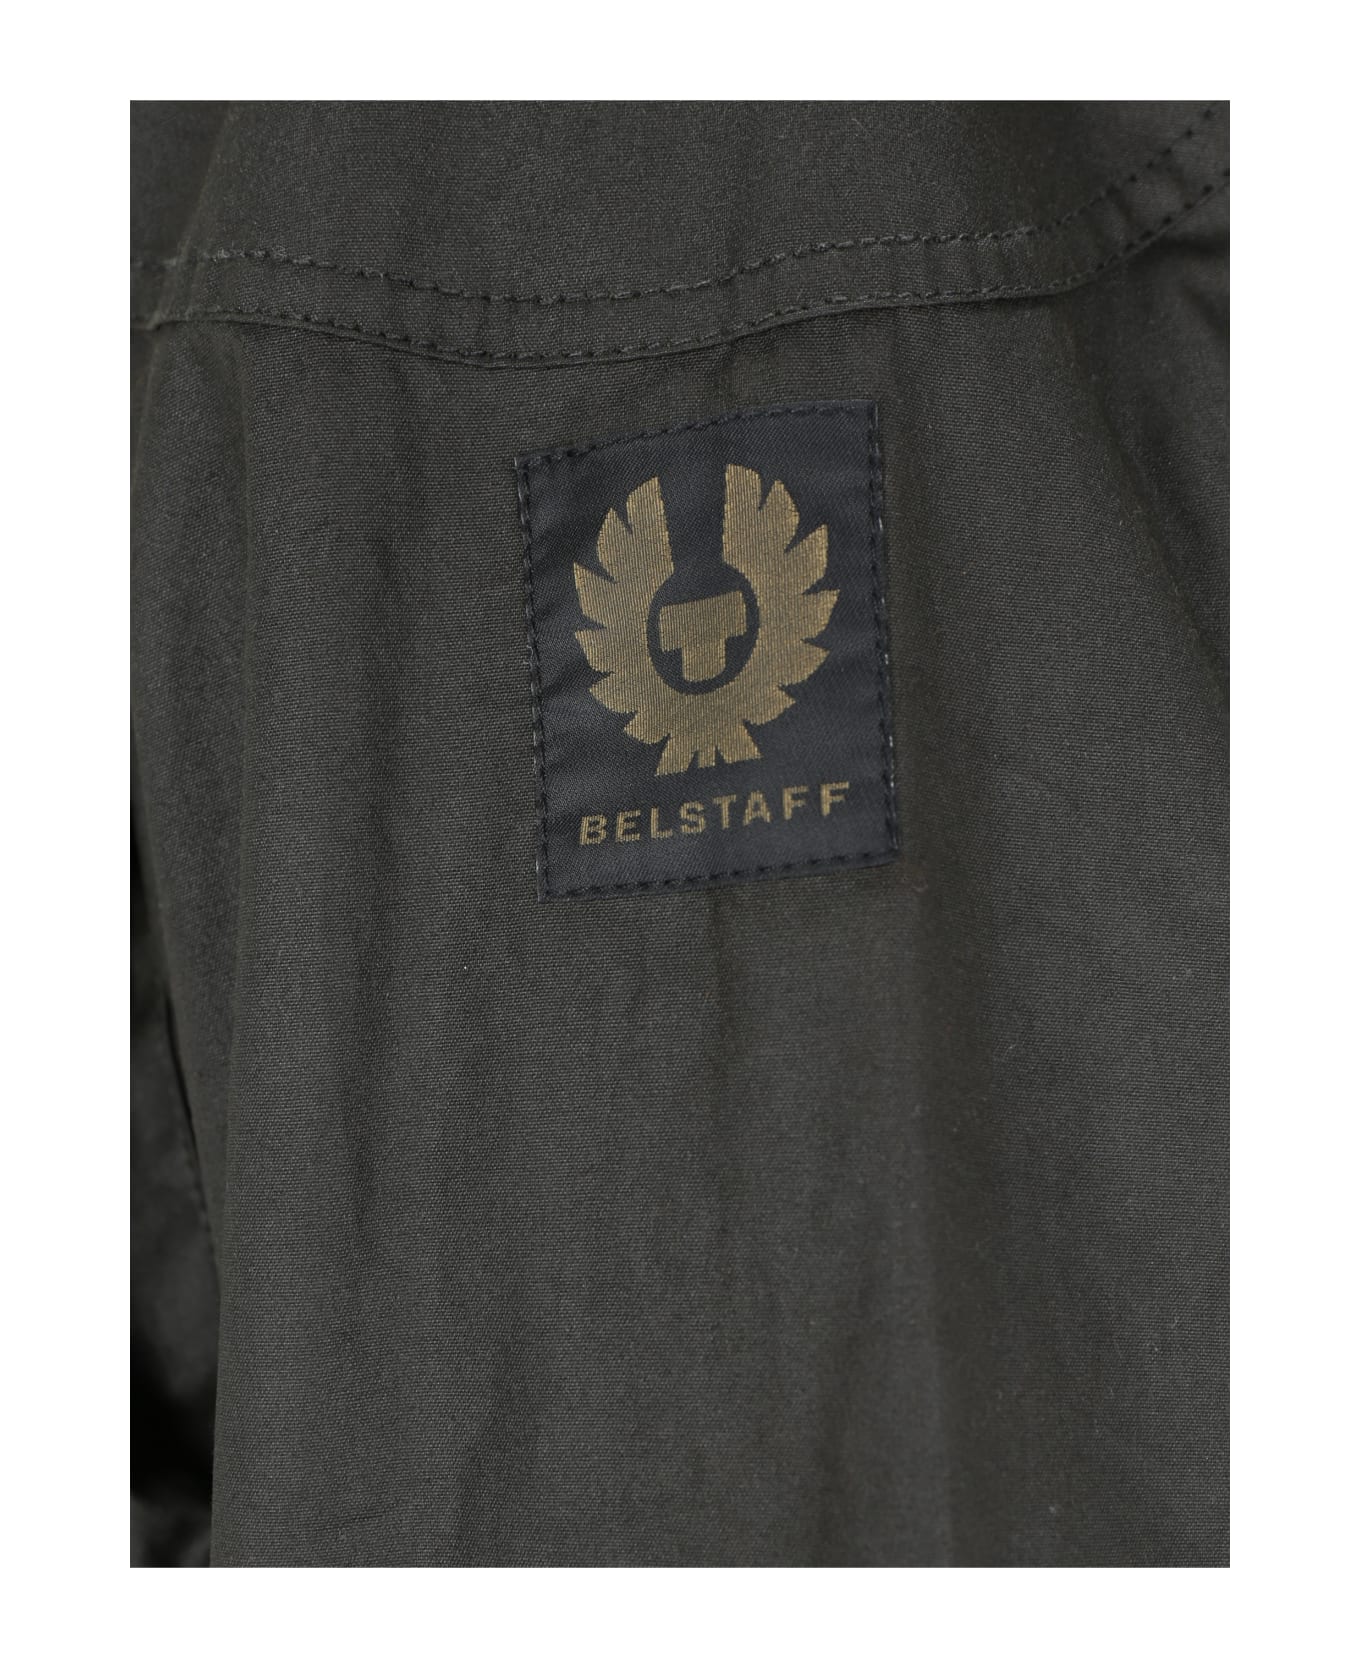 Belstaff Trialmaster Jacket - Faded Olive